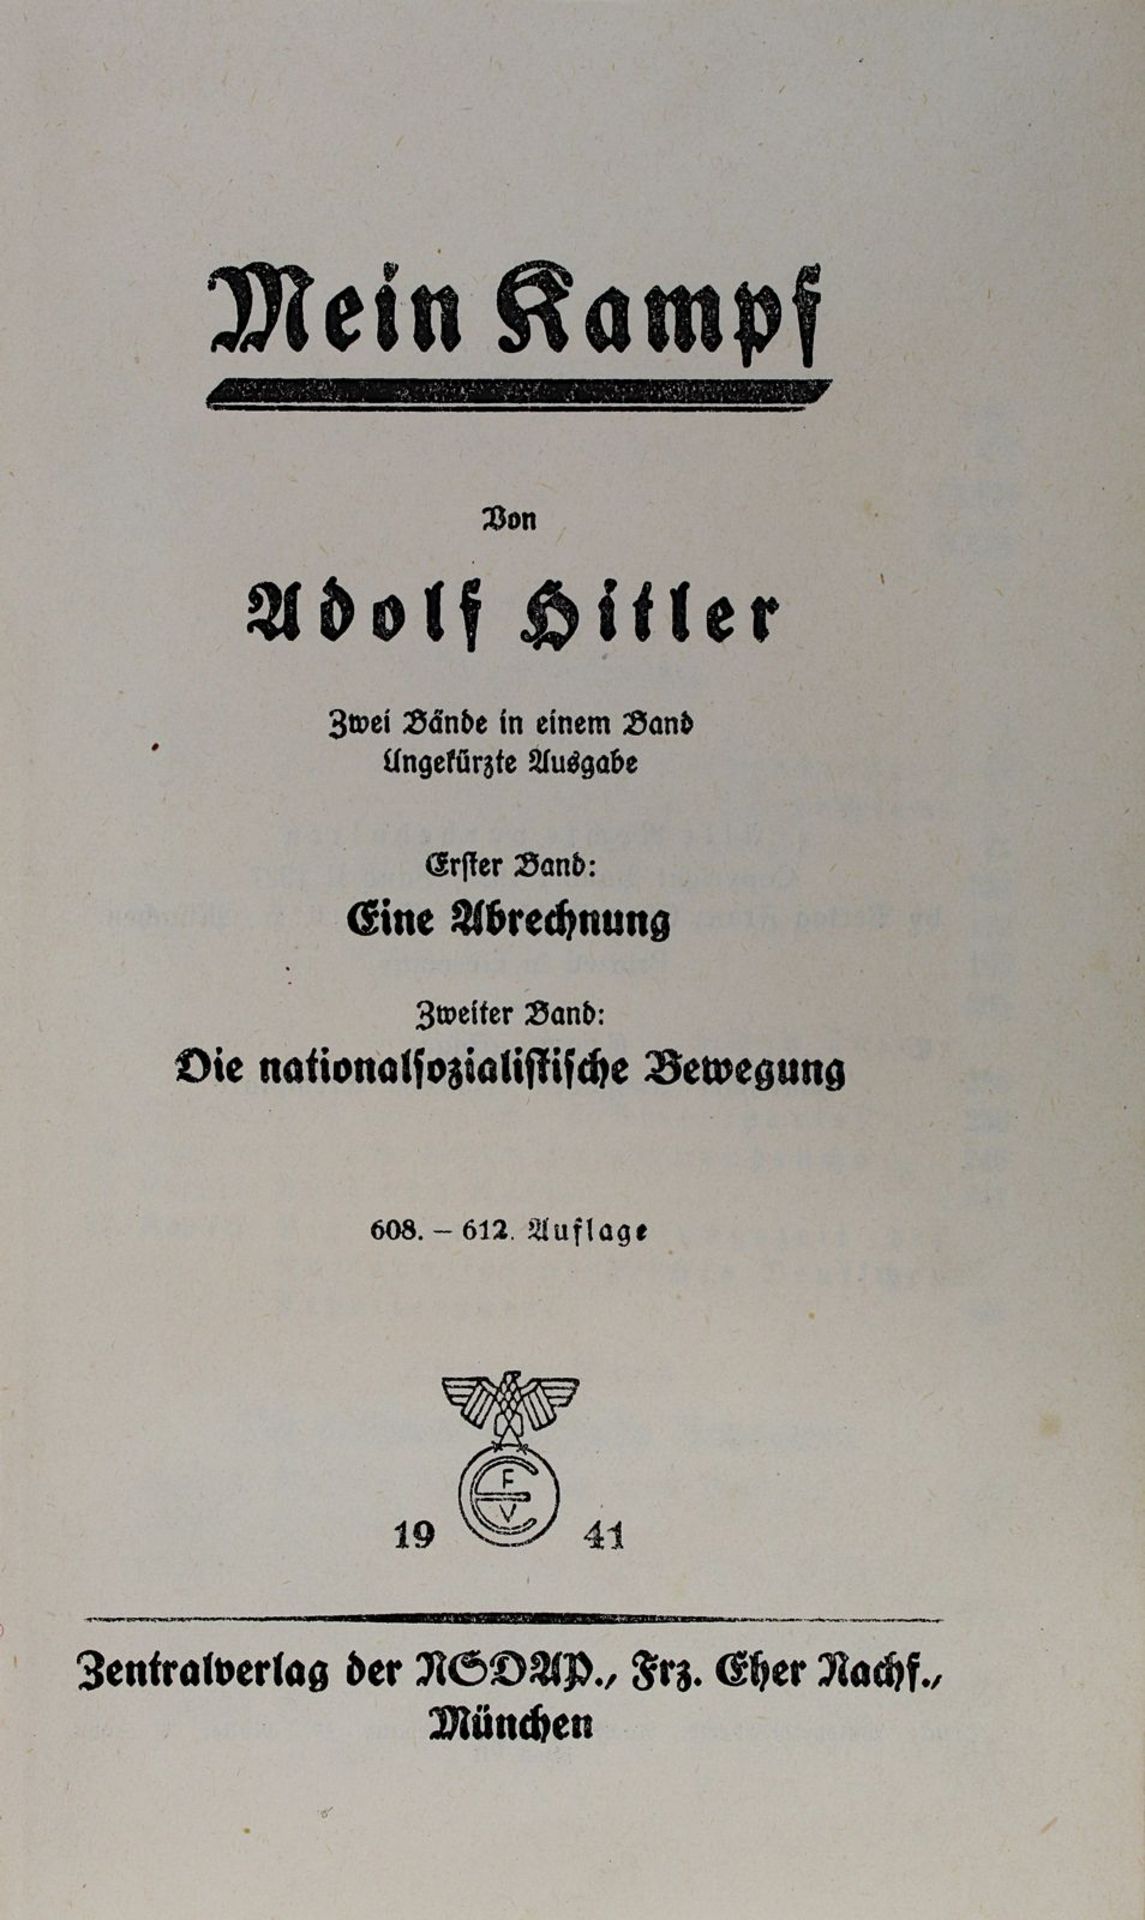 Hitler, Adolf "Mein Kampf", zwei Bände in einem Band, Zentralverlag der NSDAP Franz Eher Nachf.